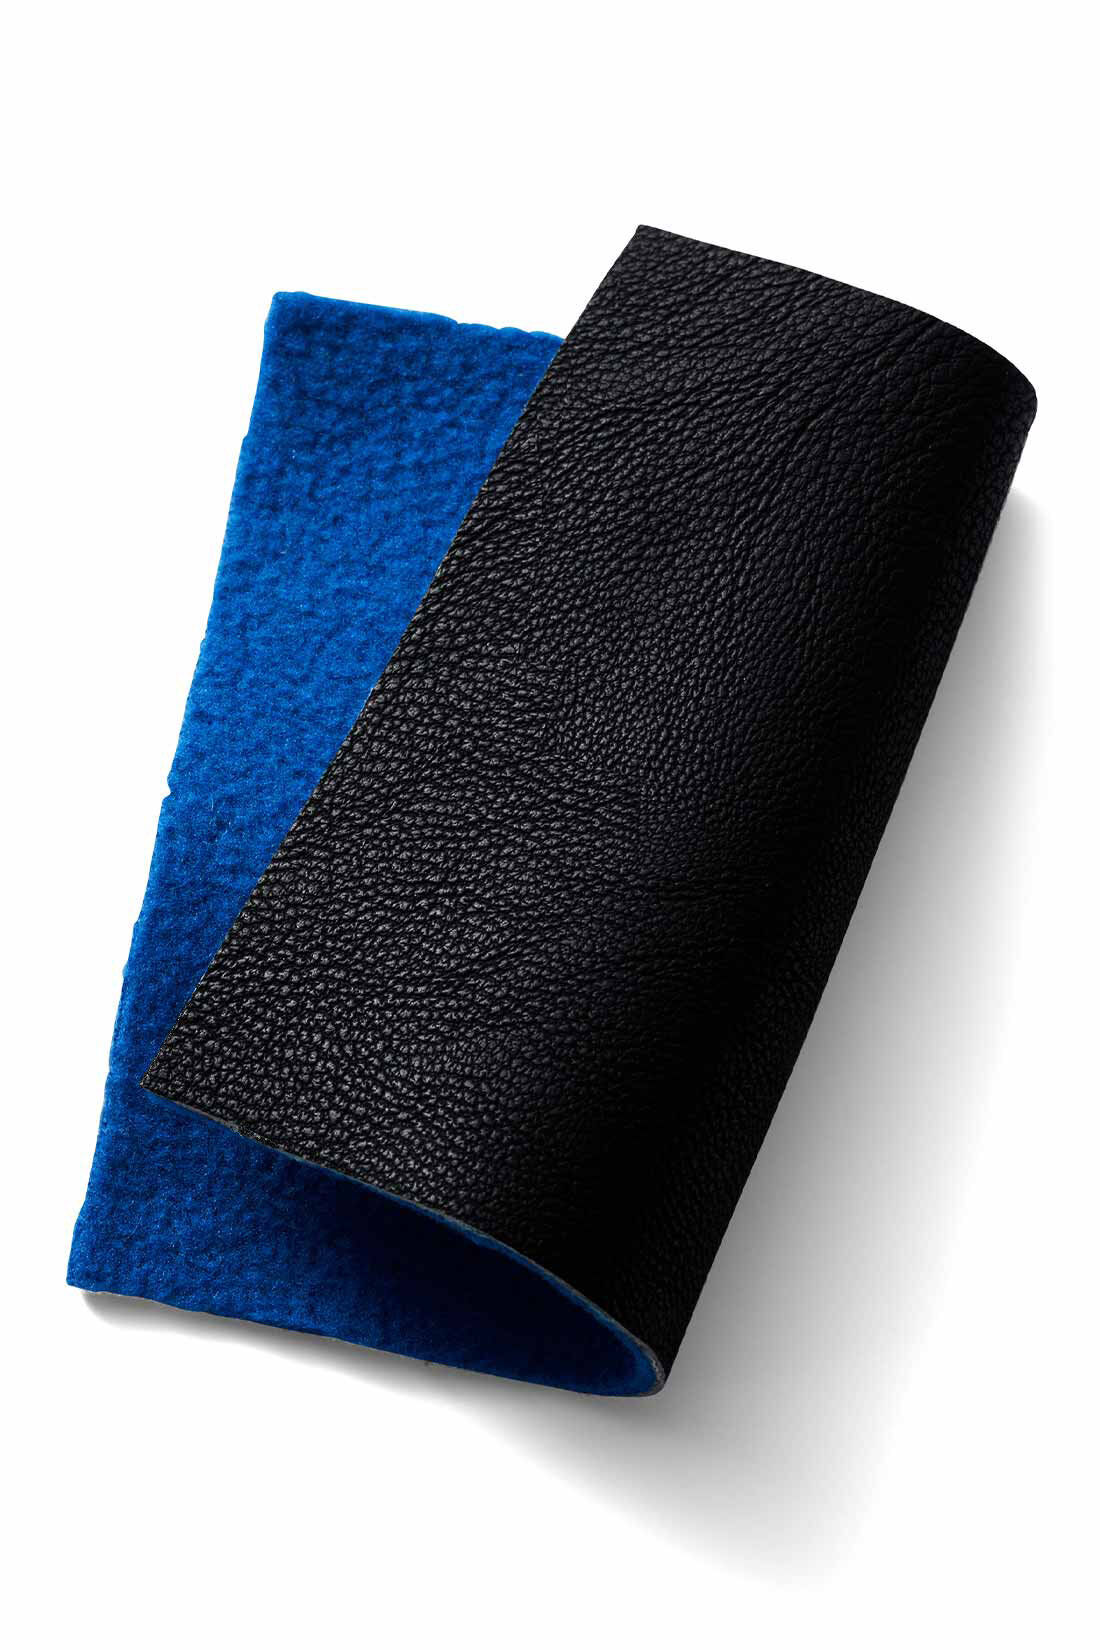 MEDE19F|MEDE19F　フェイクレザーのバルマカーンコート〈ブラック〉|軽量でごわつきのない、ポリウレタンのフェイクレザー素材。切りっぱなしの衿もとから、内側のフリース素材のブルーがのぞきます。